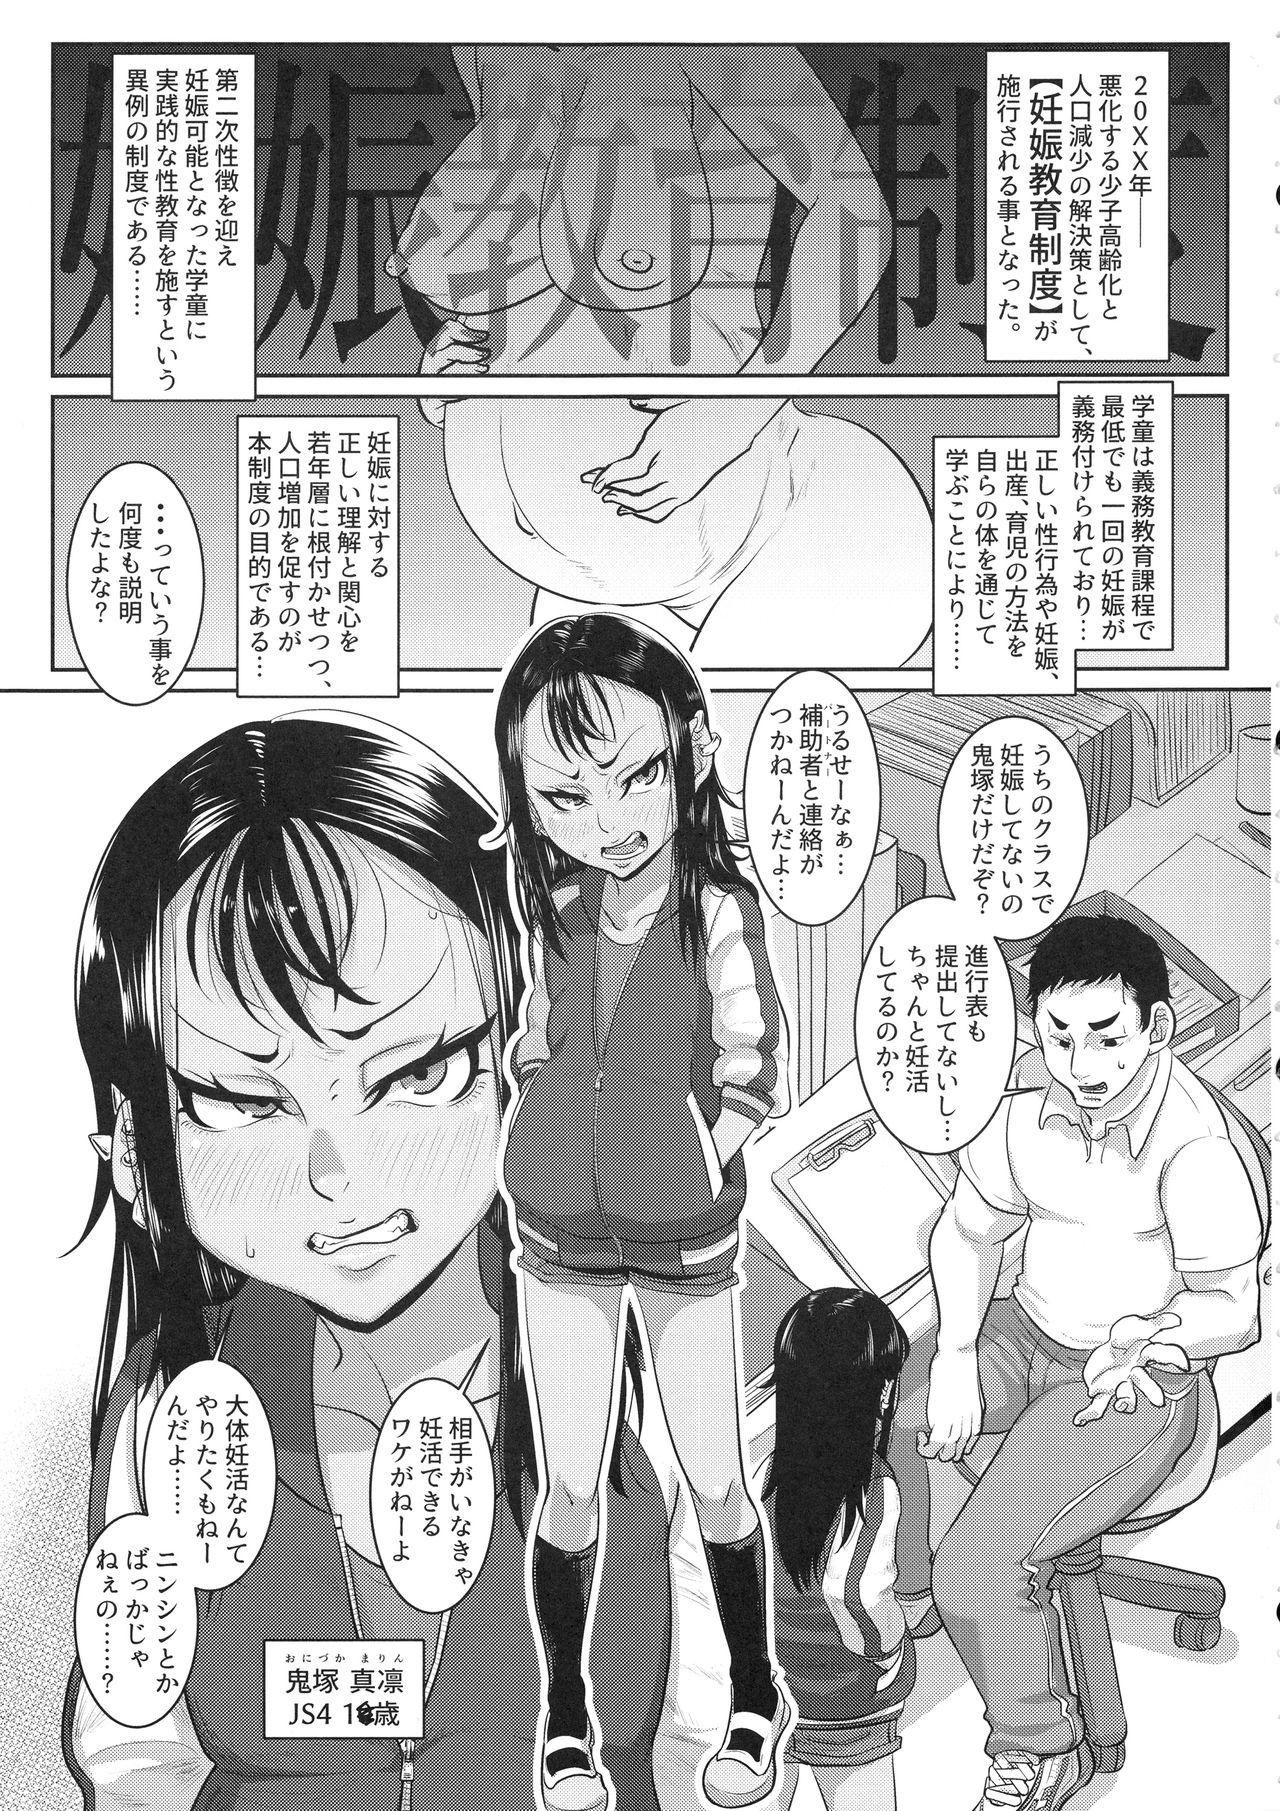 Boquete CHOCOLATE GIRL 4 Kuro Loli Yankee ga Manabu Ninshin Katsudou - Original Tease - Picture 2